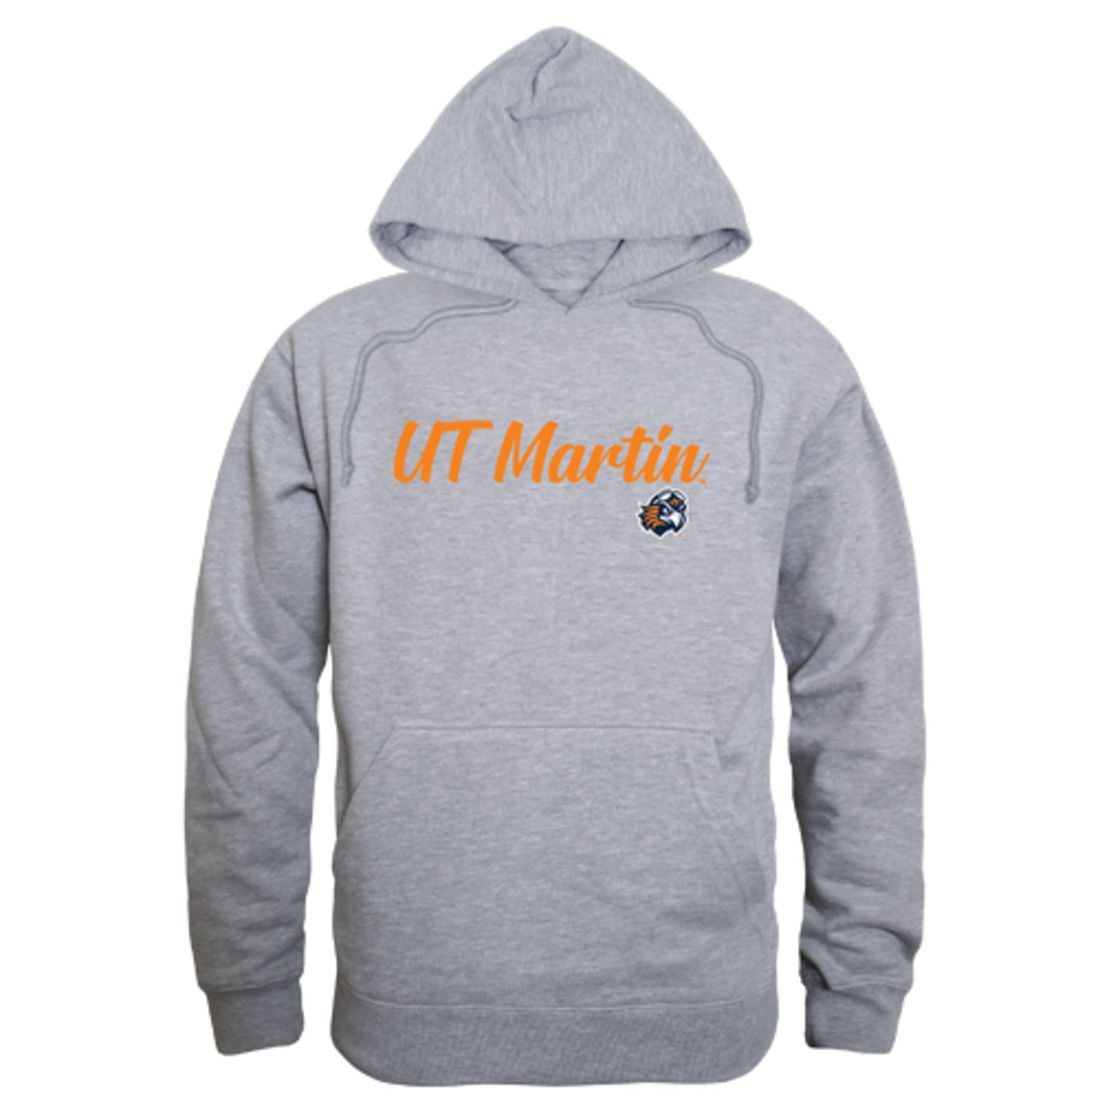 UT University of Tennessee at Martin Skyhawks Mens Script Hoodie Sweatshirt Black-Campus-Wardrobe